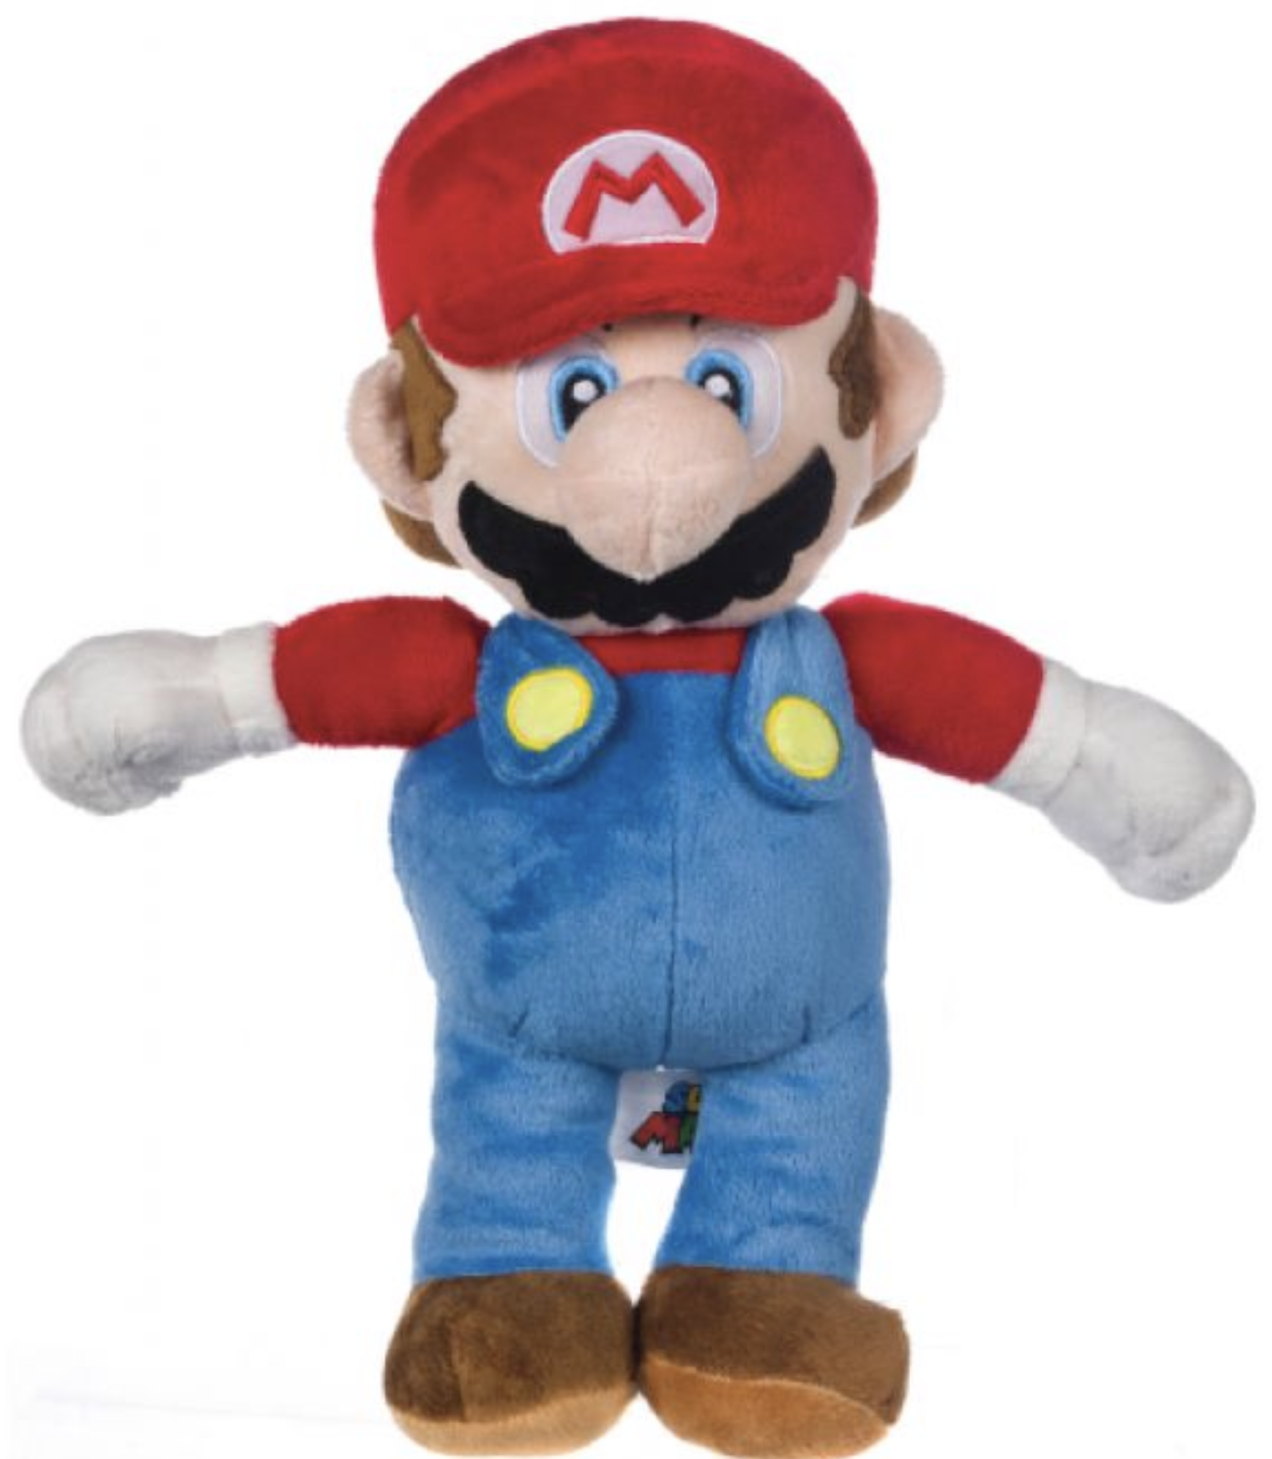 Gadget - Peluches - Nintendo - Super Mario 27cm